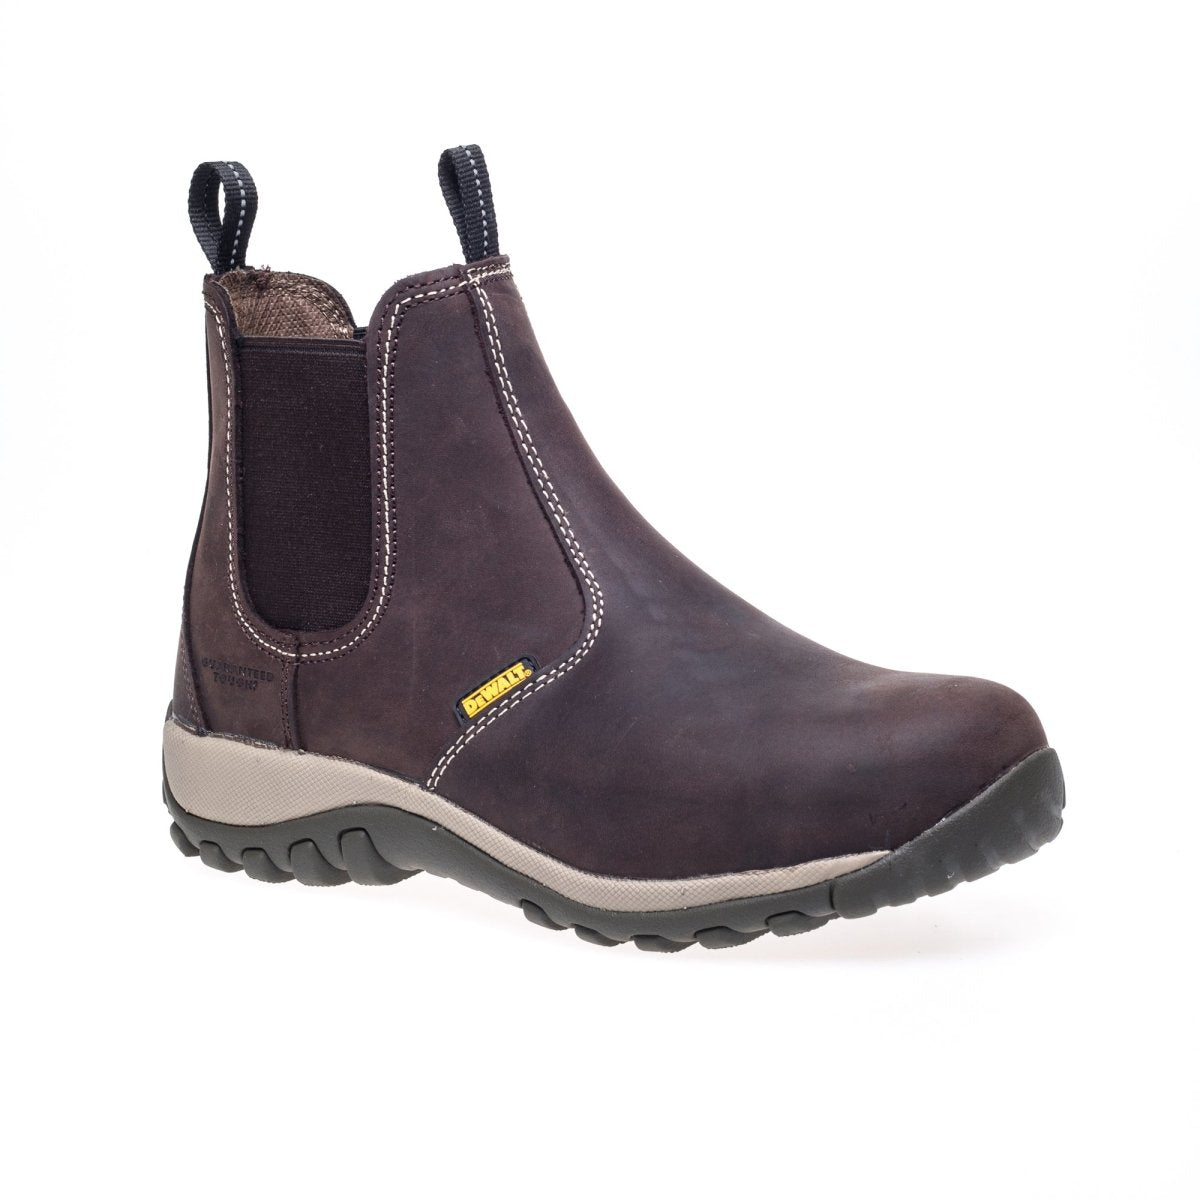 DeWalt Radial Mens Leather Steel Toe Safety Dealer Boots - Shoe Store Direct